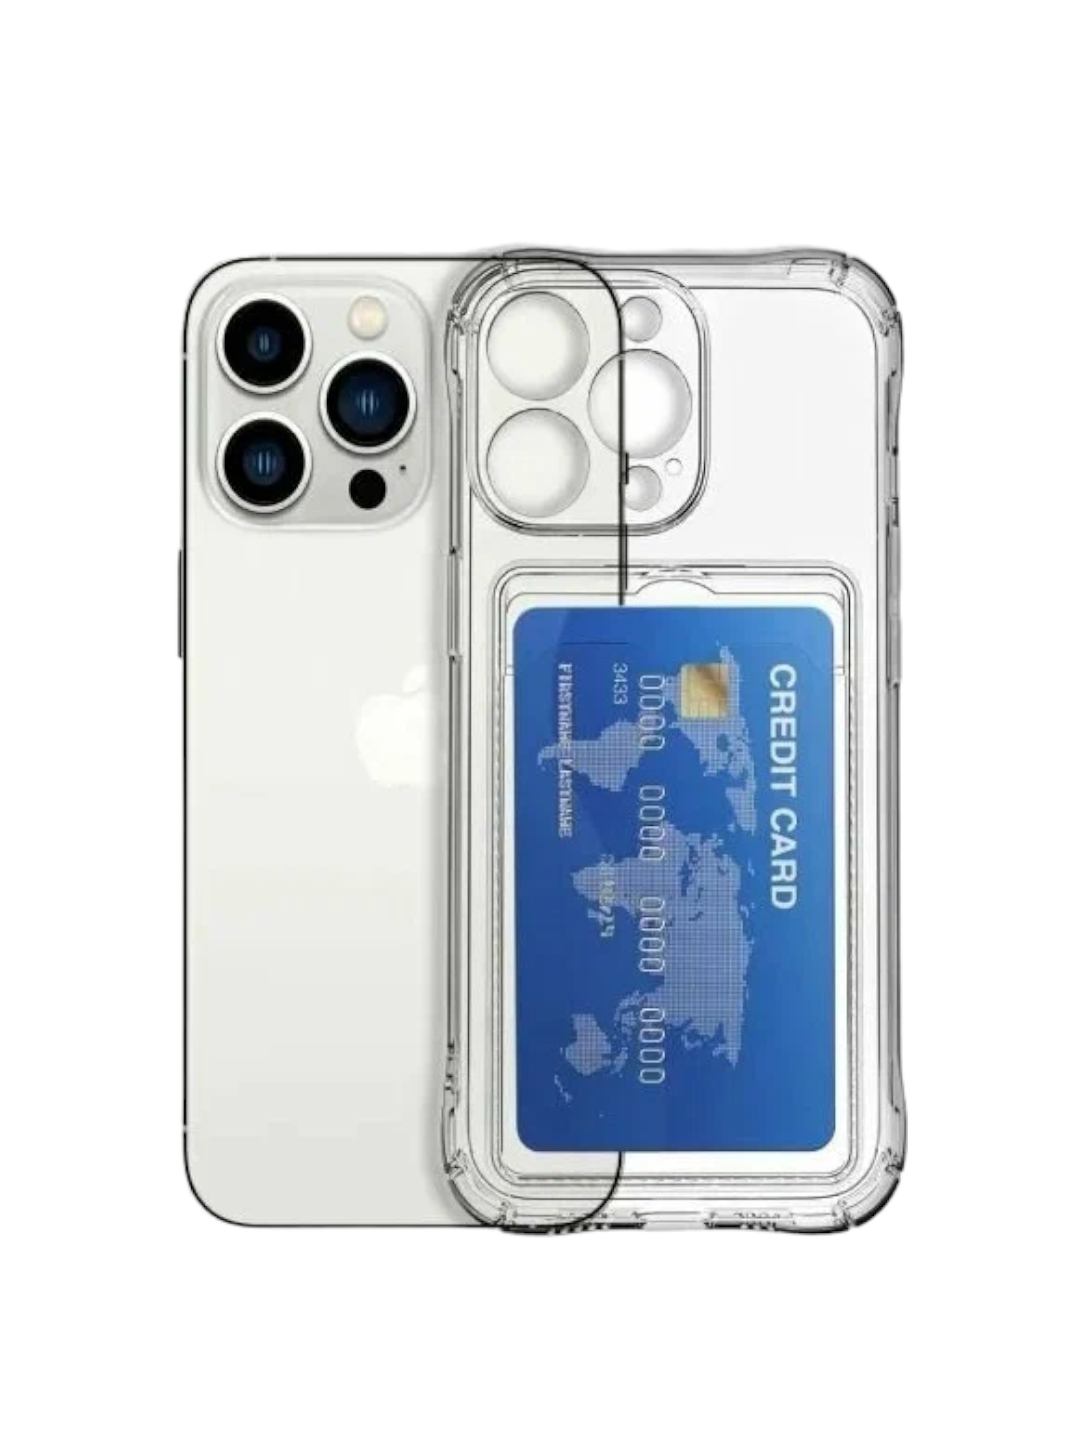 Прозрачный чехол на iPhone 11 Pro с кармашком для карточки